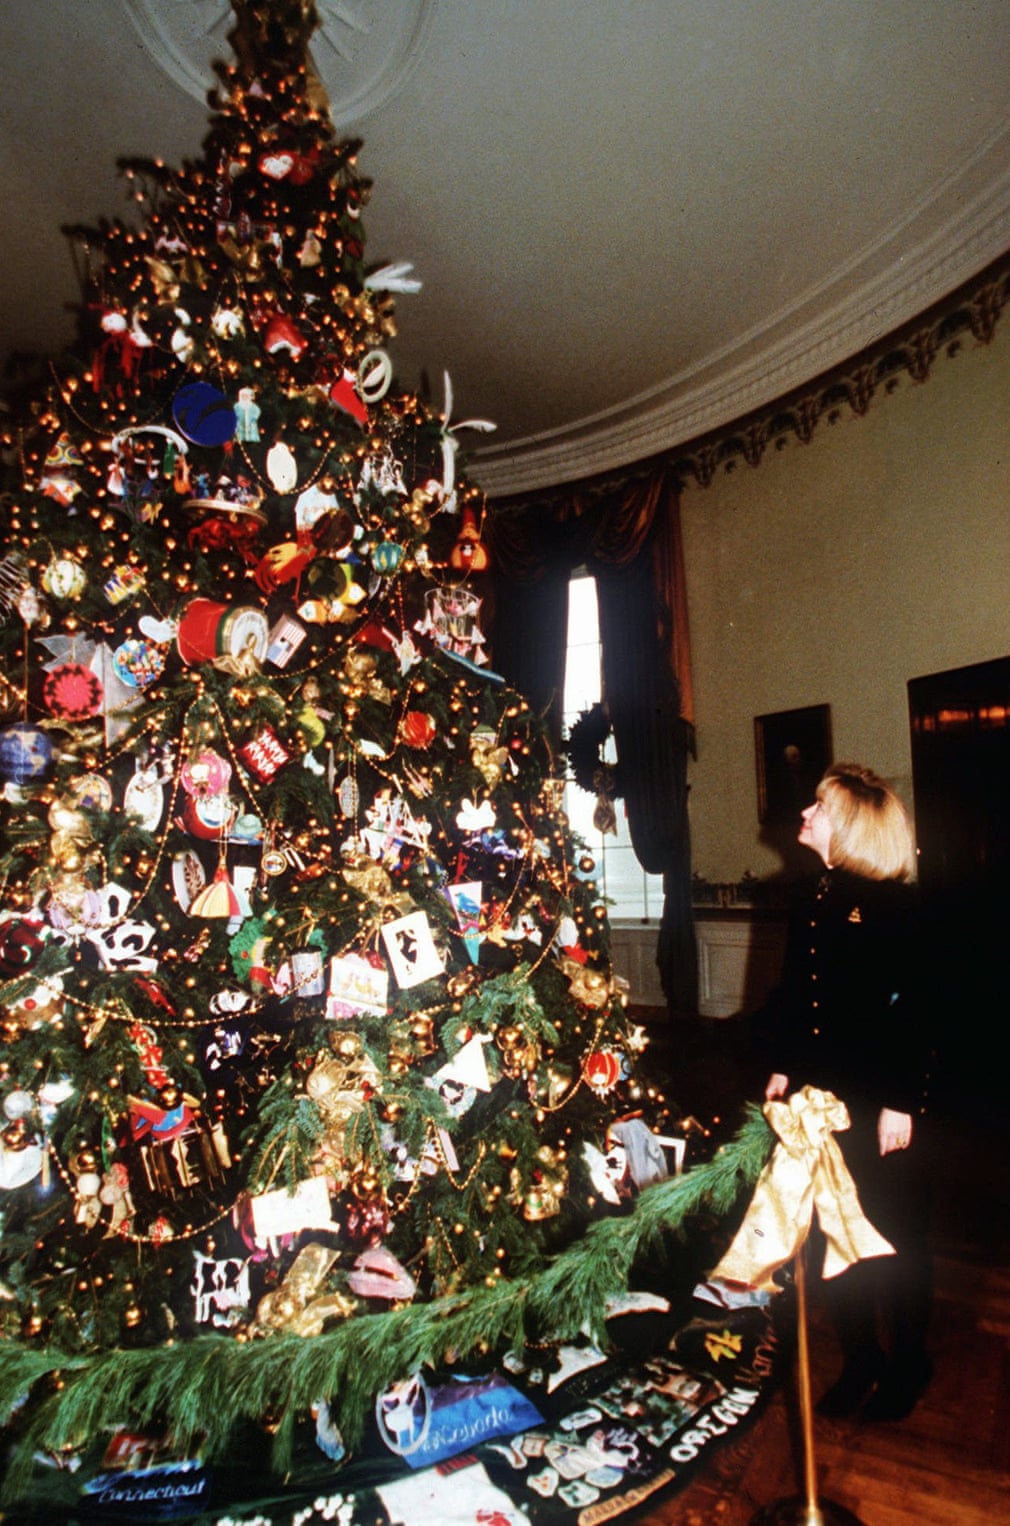 هيلارى كلينتون بجانب شجرة كريسماس 1994